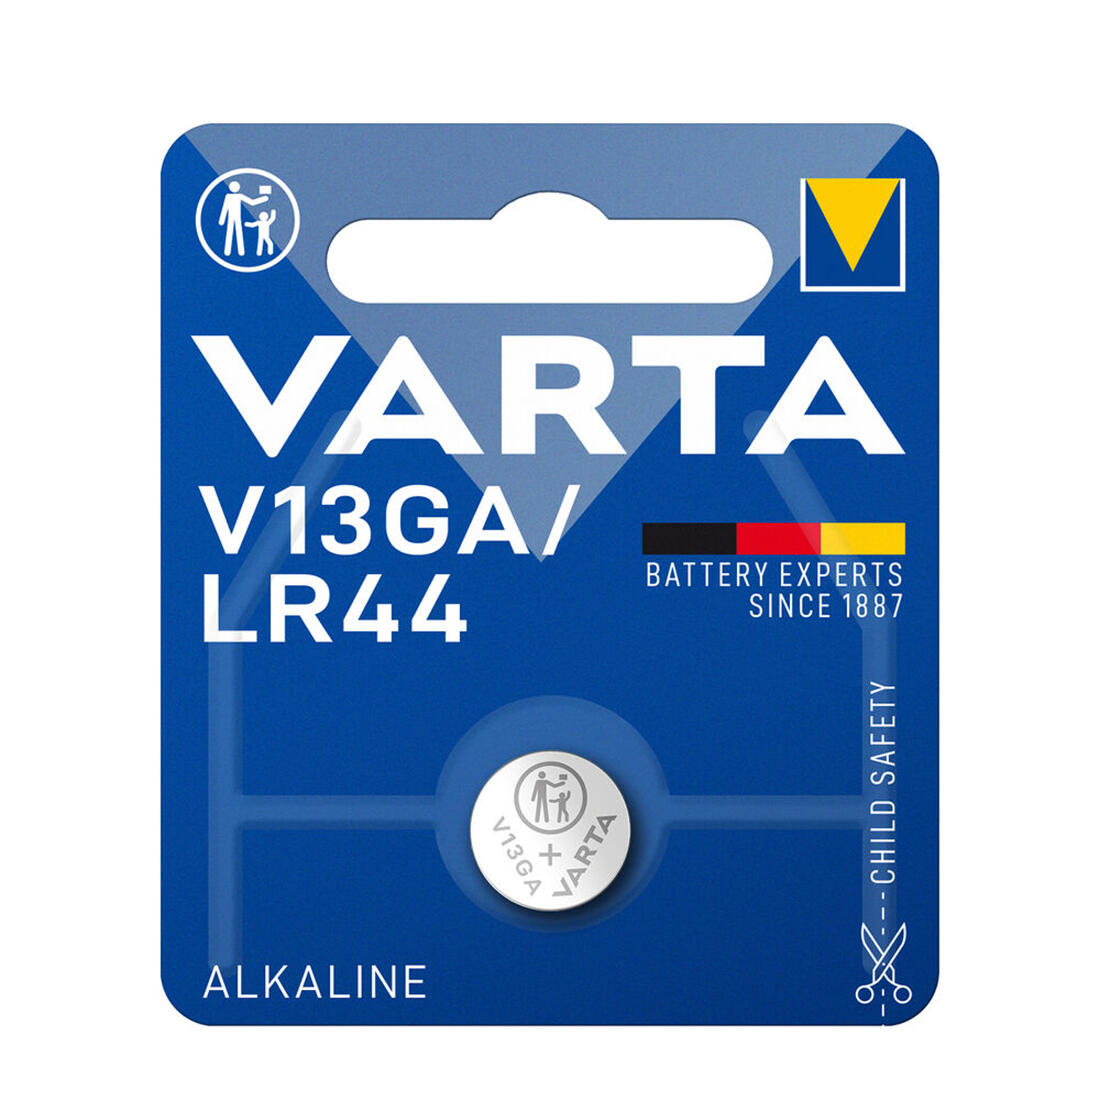 baterie knoflíková V13GA/LR44 alkalická VARTA 0.01 Kg MAXMIX Sklad14 129174 120